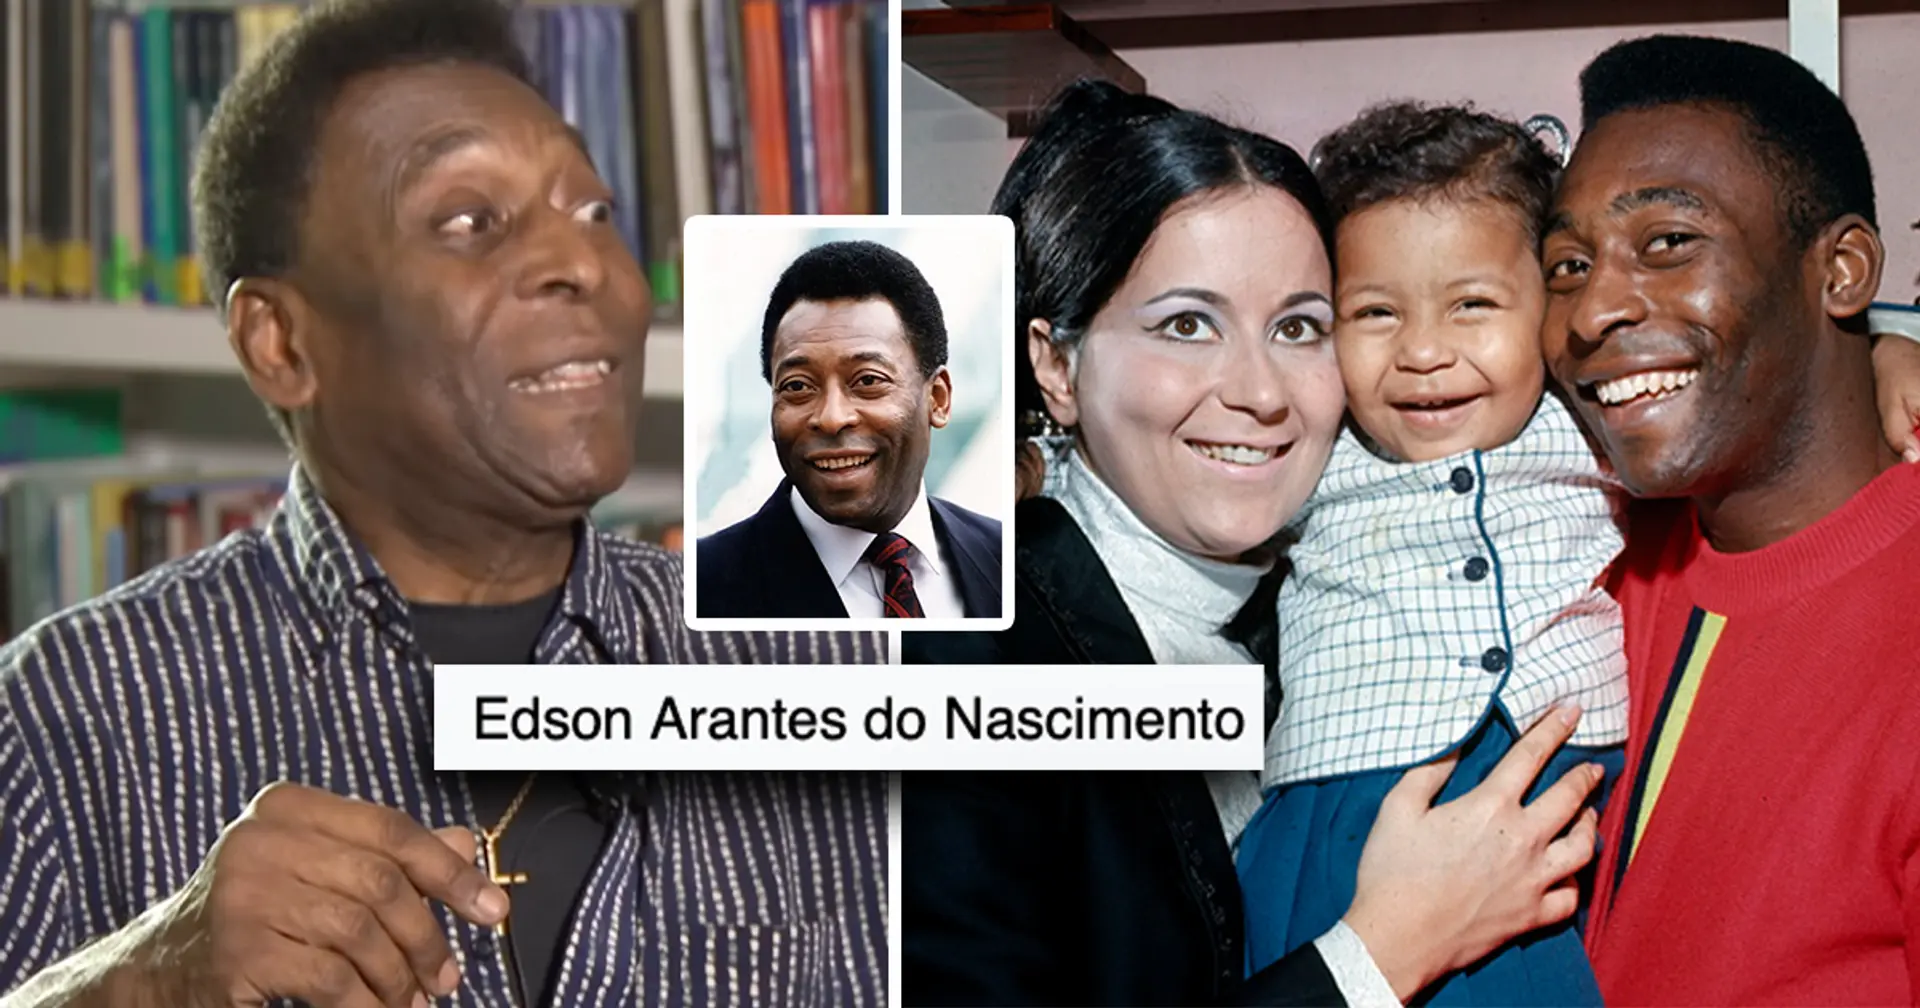 Le nom surprenant de Pelé que sa famille avait l'habitude d'appeler à la maison - ni Pelé ni son nom de naissance Edson